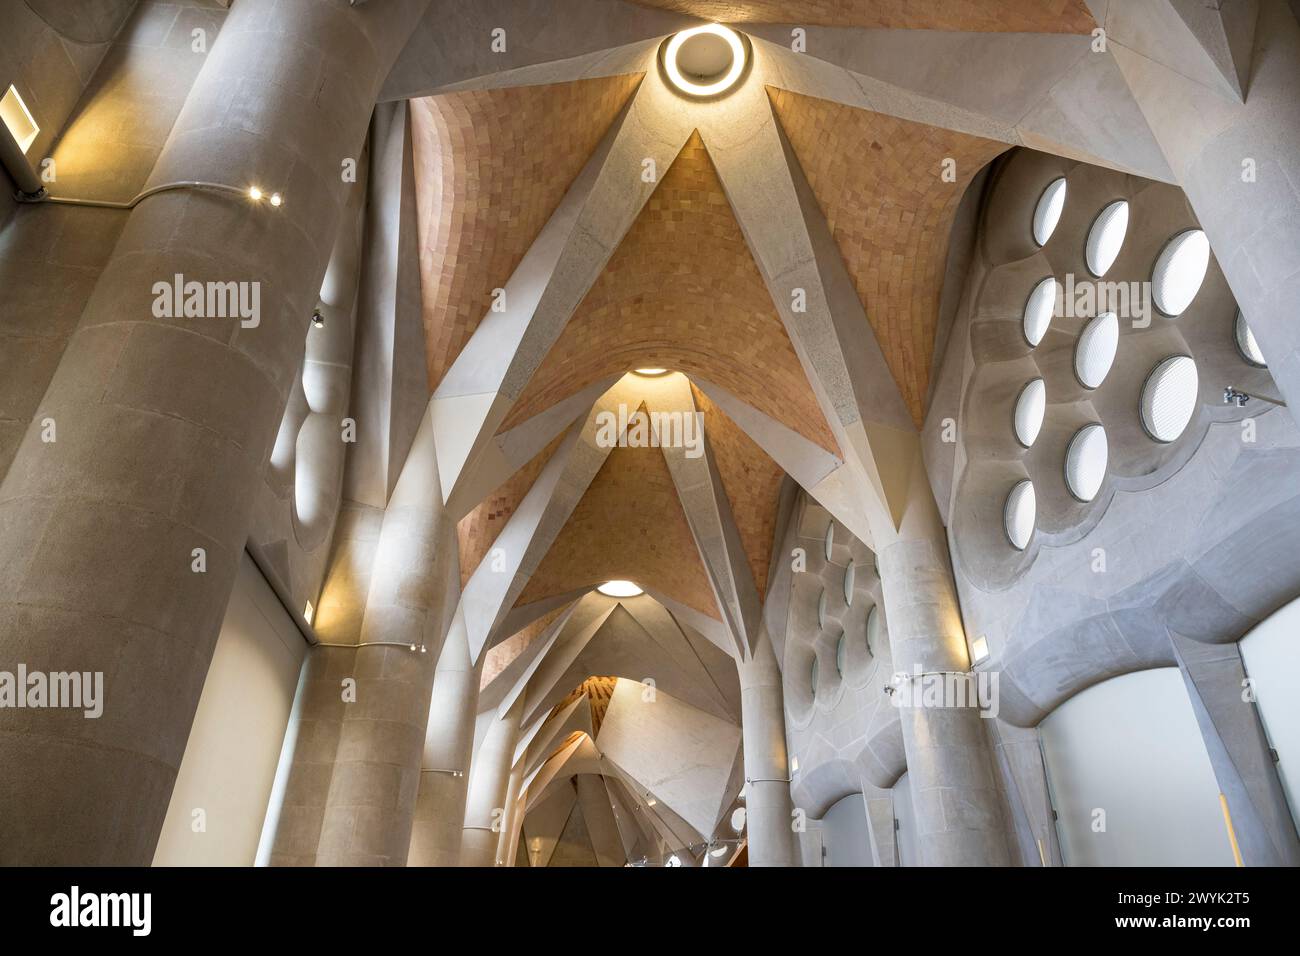 Spanien, Katalonien, Barcelona, Eixample Viertel, Sagrada Familia Basilika des katalanischen modernistischen Architekten Antoni Gaudi, die zum UNESCO-Weltkulturerbe gehört, die Sakristei Stockfoto